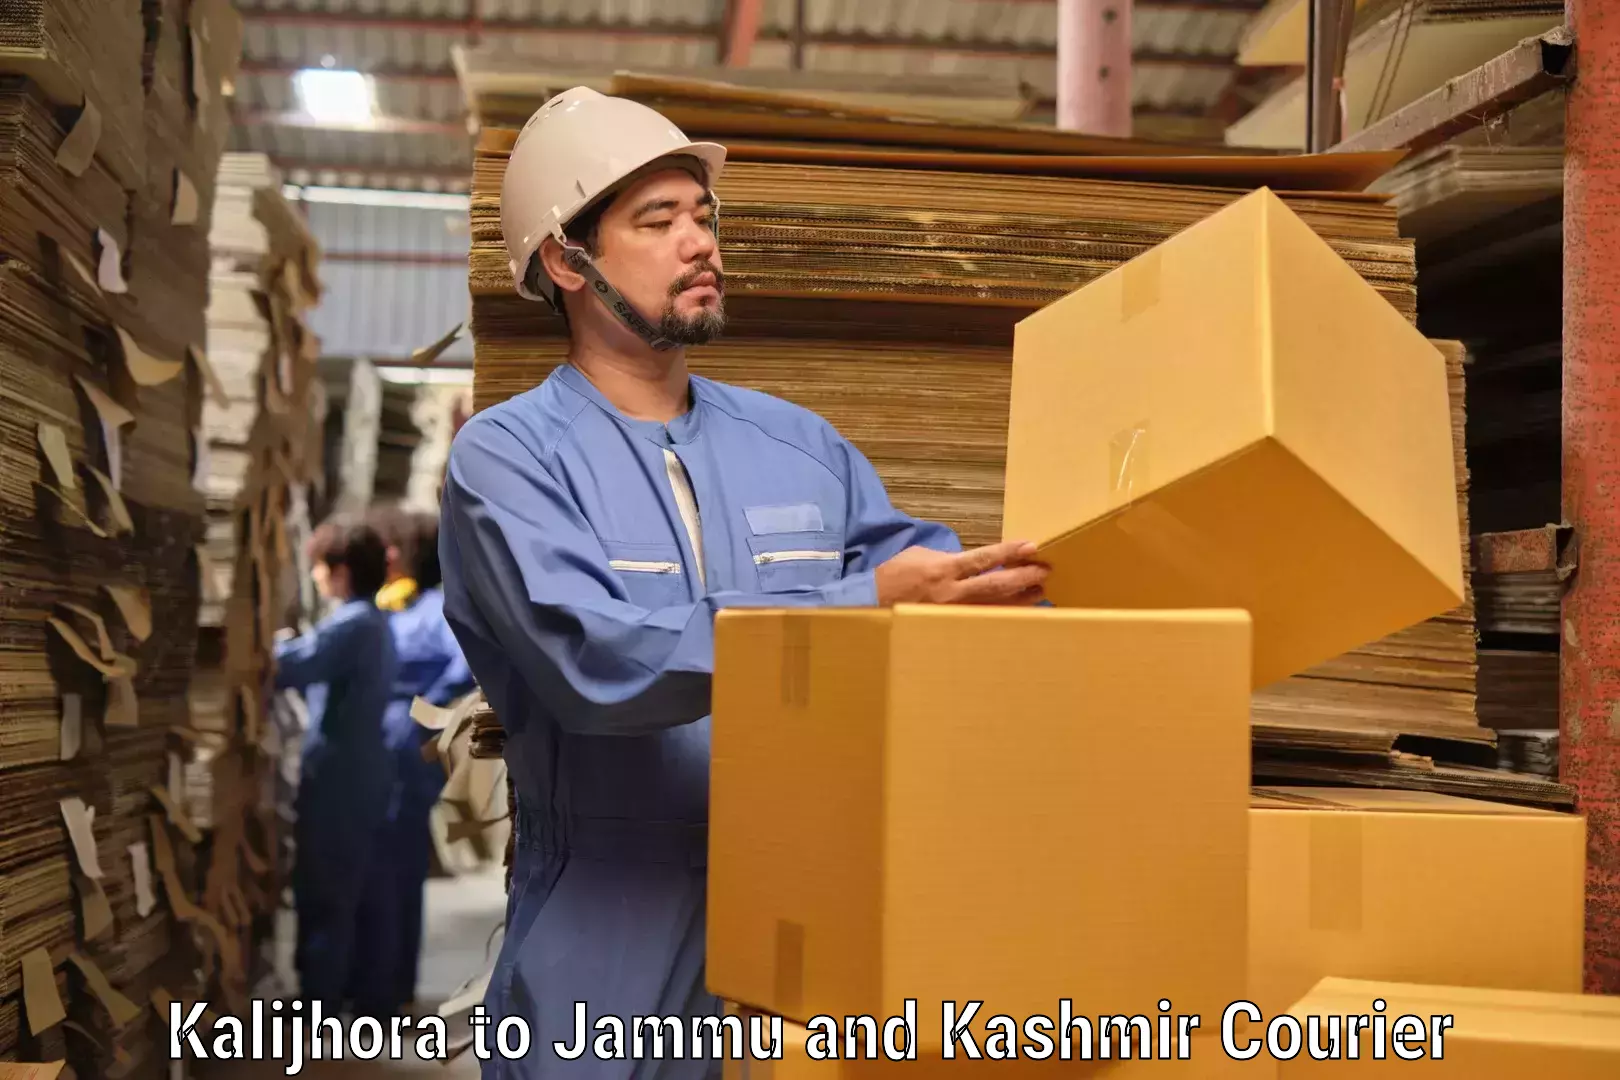 Quick booking process Kalijhora to Jammu and Kashmir